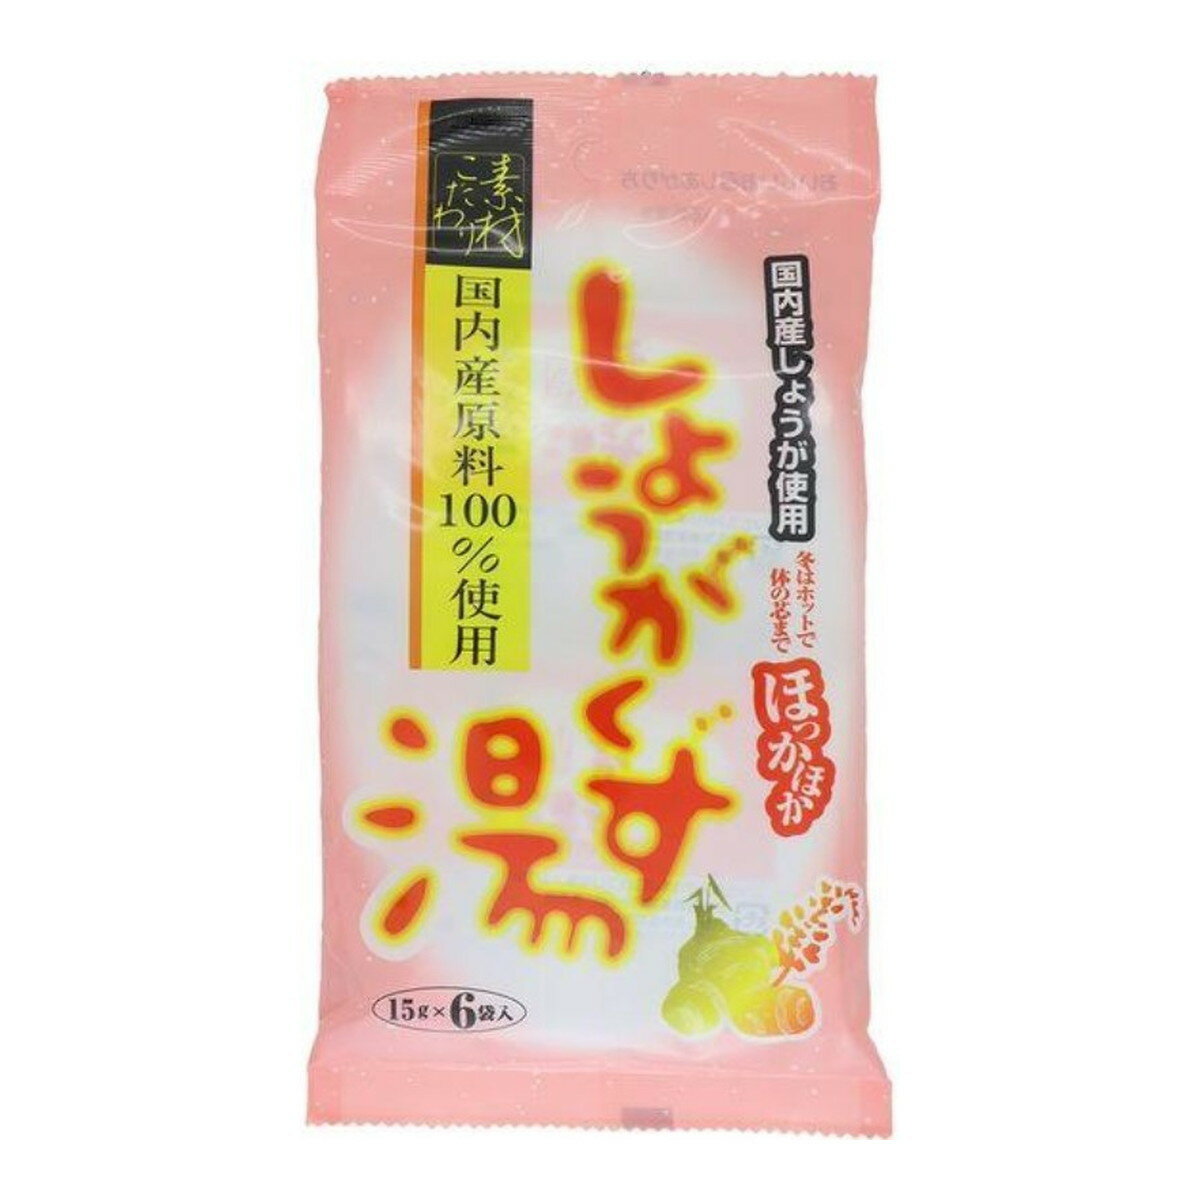 今岡製菓 しょうがくず湯 90g(15g×6袋